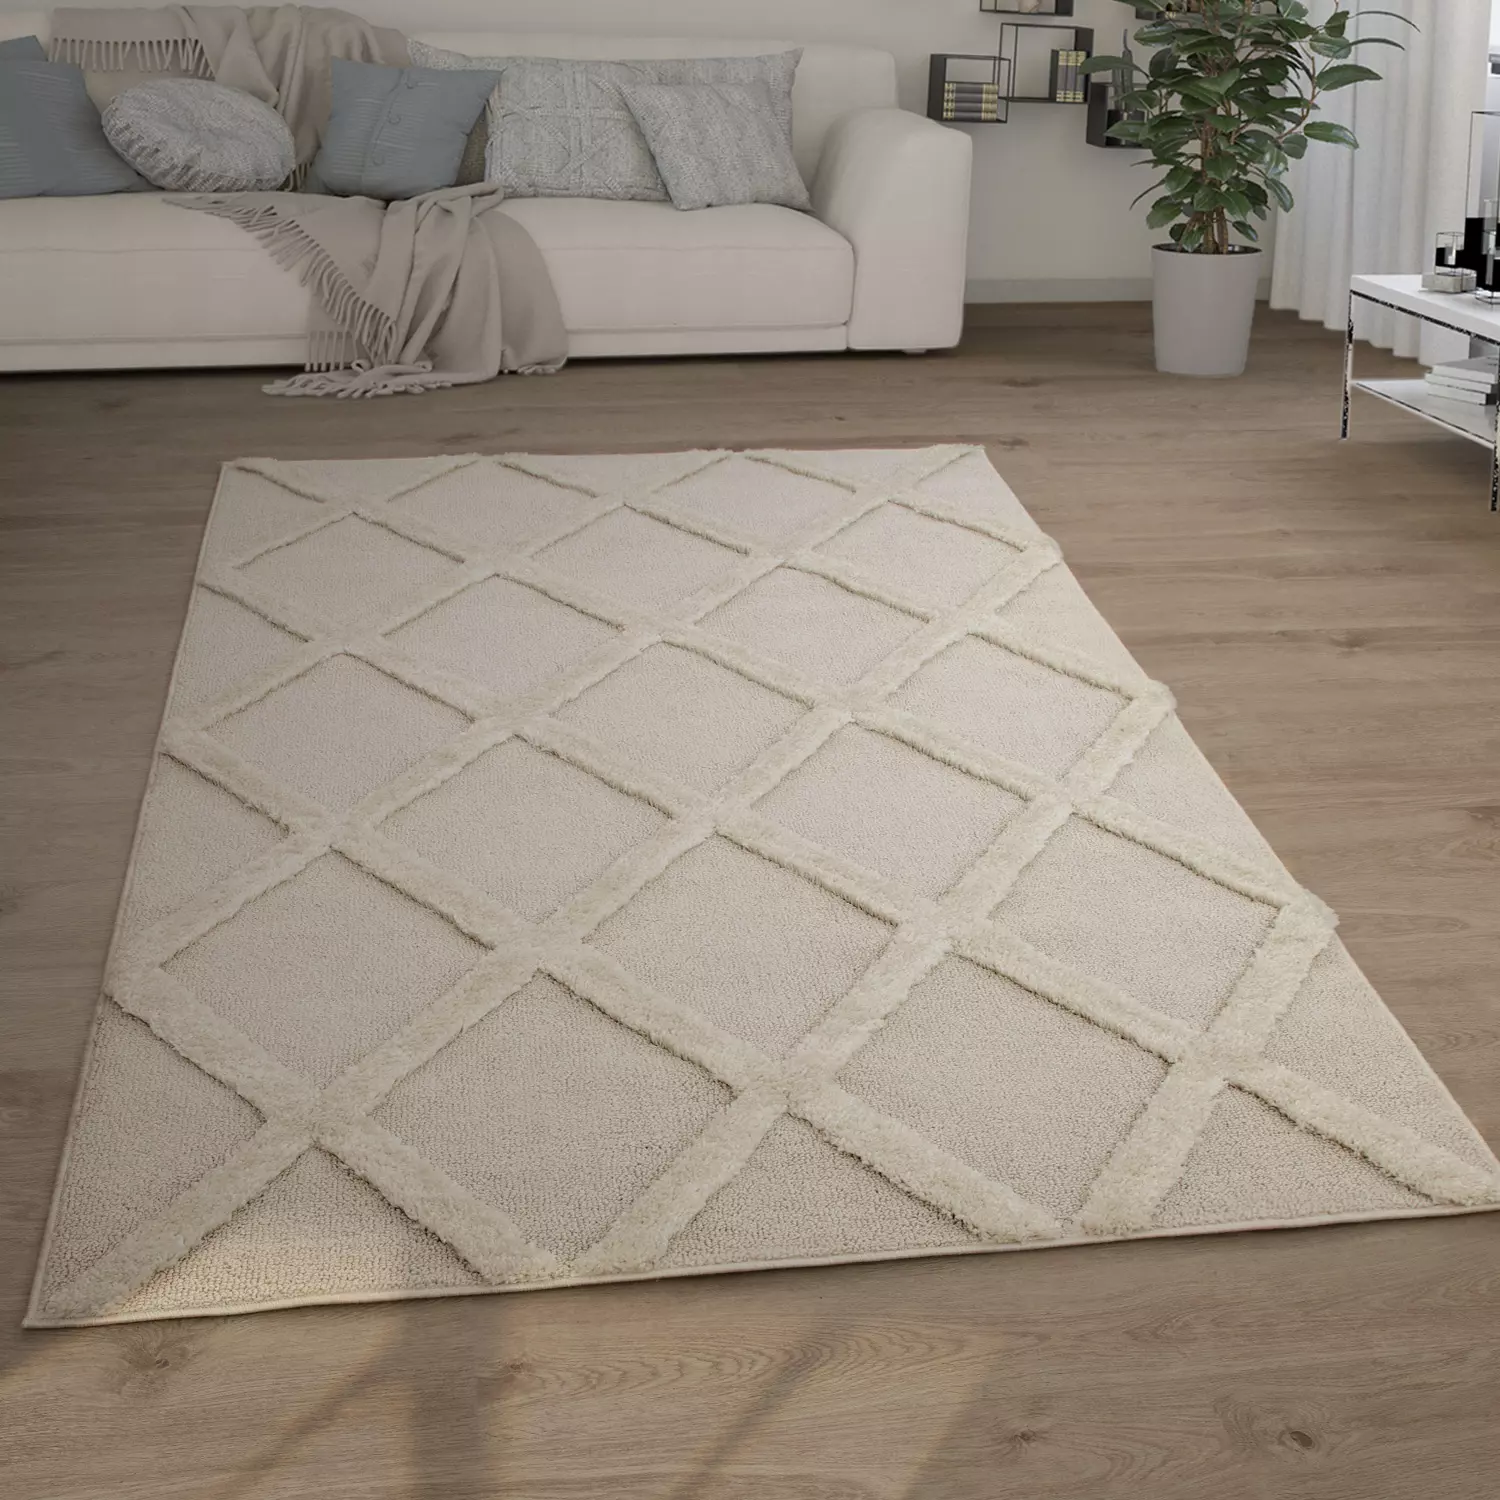 Moderne Teppiche und Designer Teppiche online kaufen